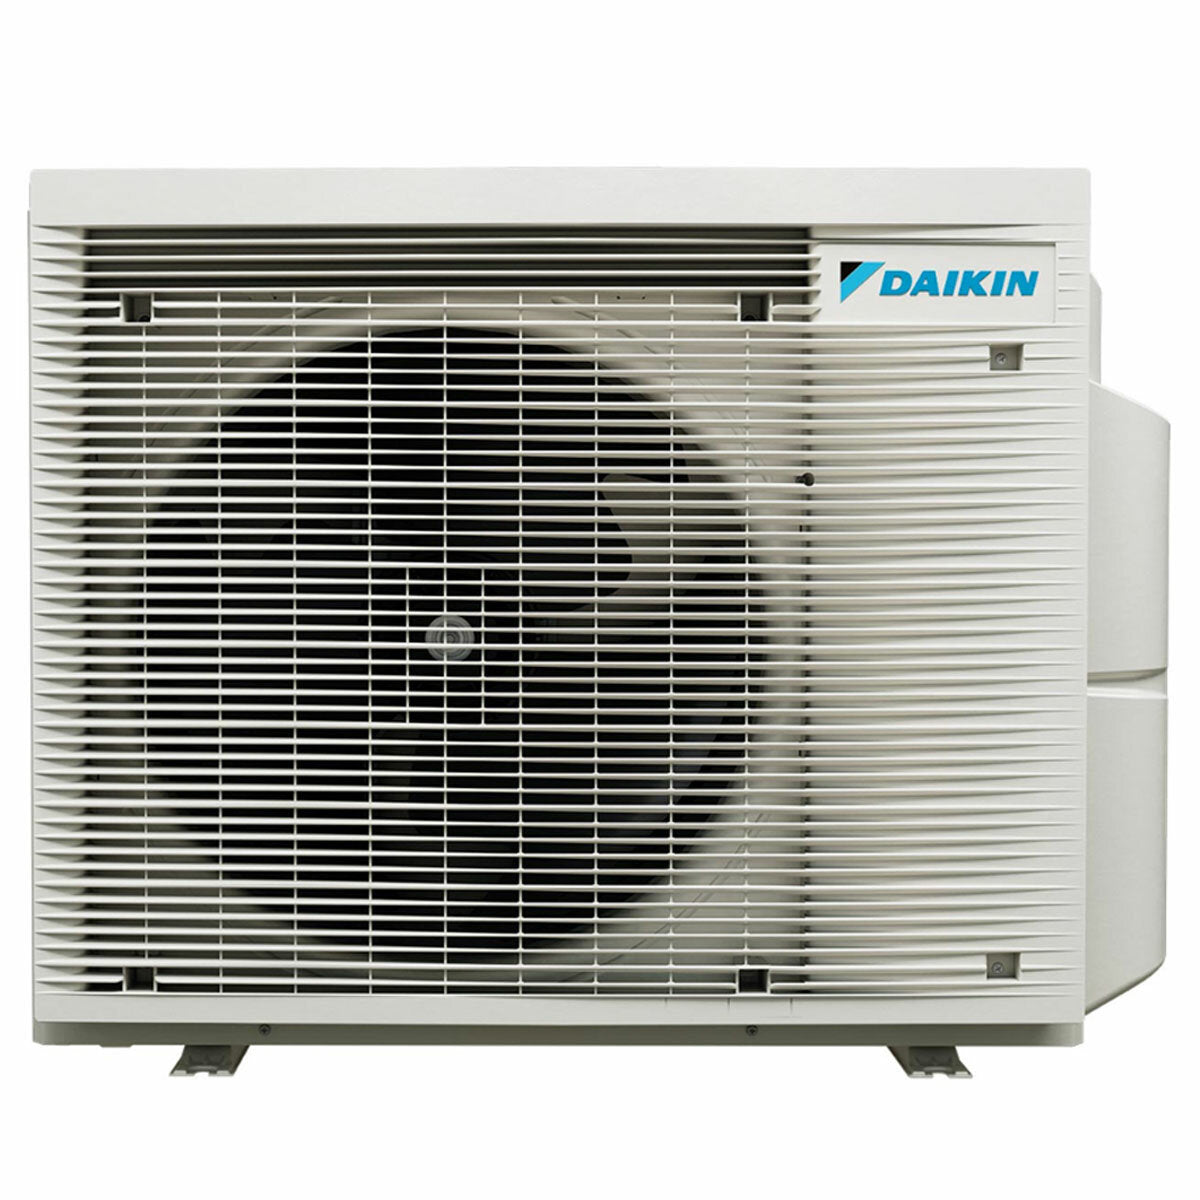 Daikin Stylish Trial Split Klimaanlage 7000 + 9000 + 9000 BTU Inverter A +++ WLAN Außengerät 5,2 kW